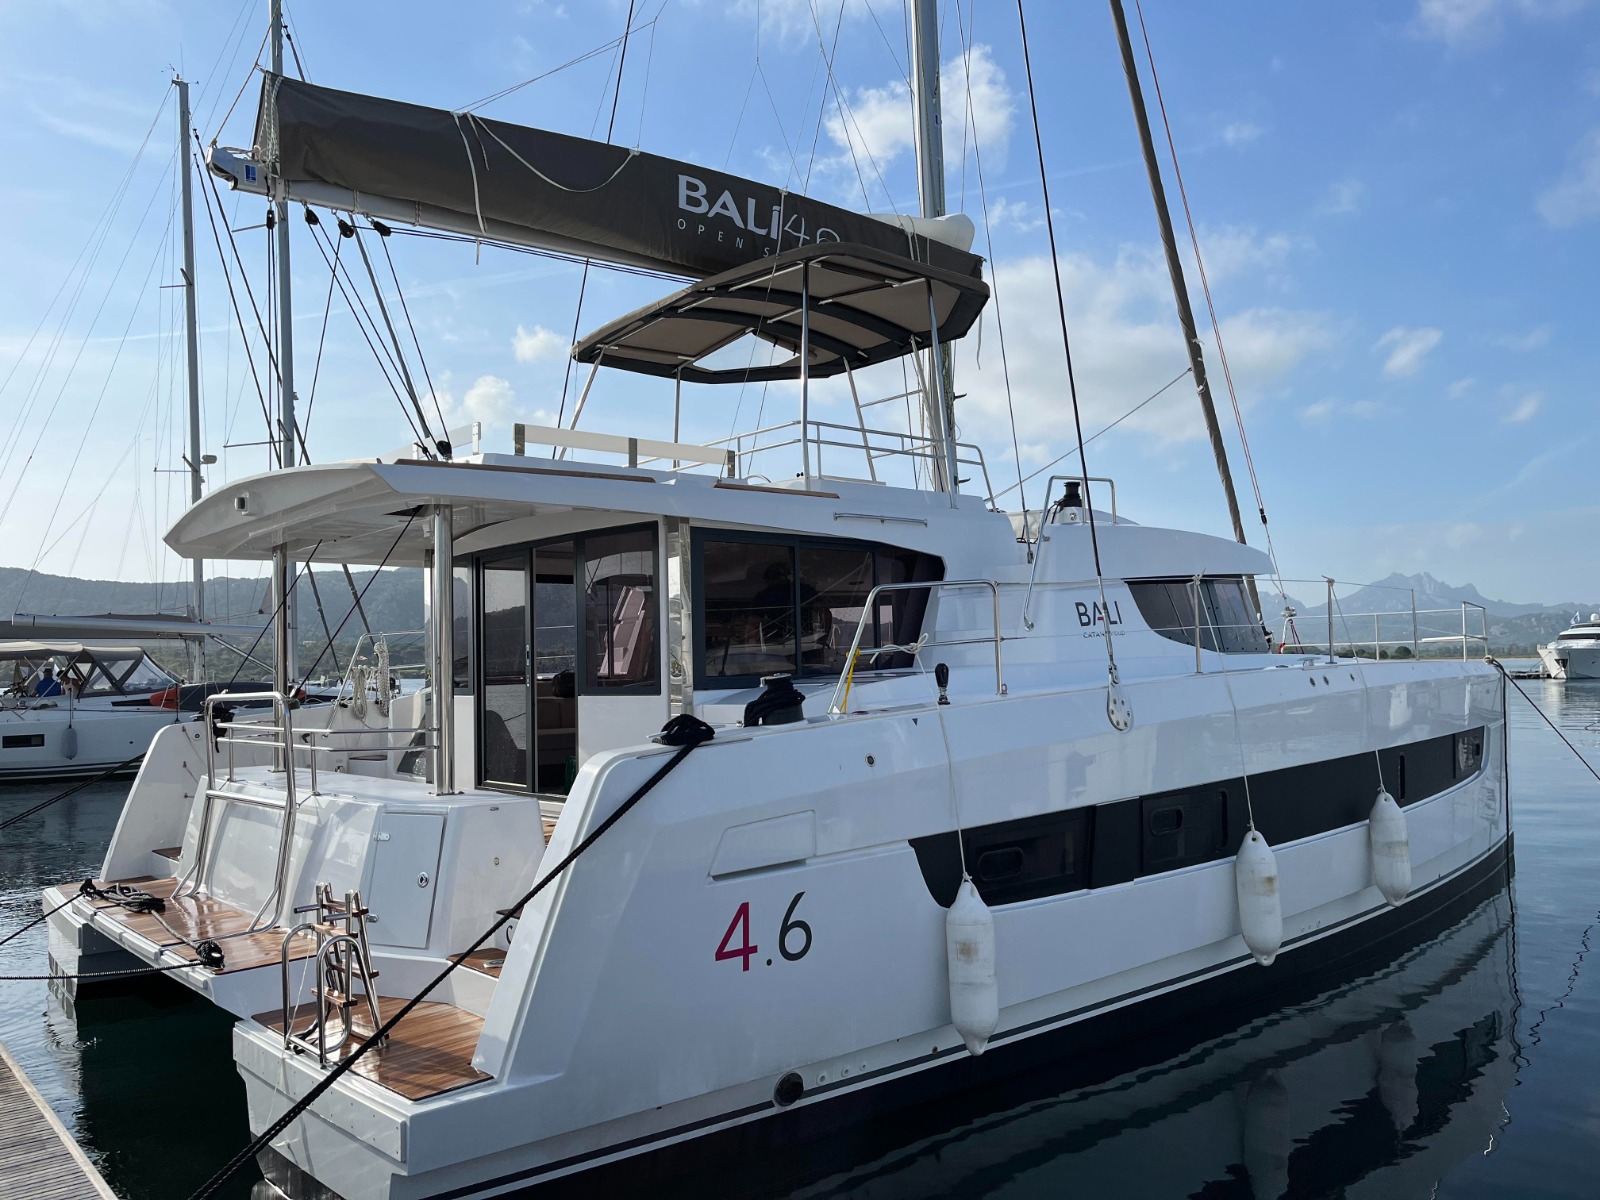 Bali 4.6 - Yacht Charter Cannigione & Boat hire in Italy Sardinia Costa Smeralda Cannigione Cannigione 3